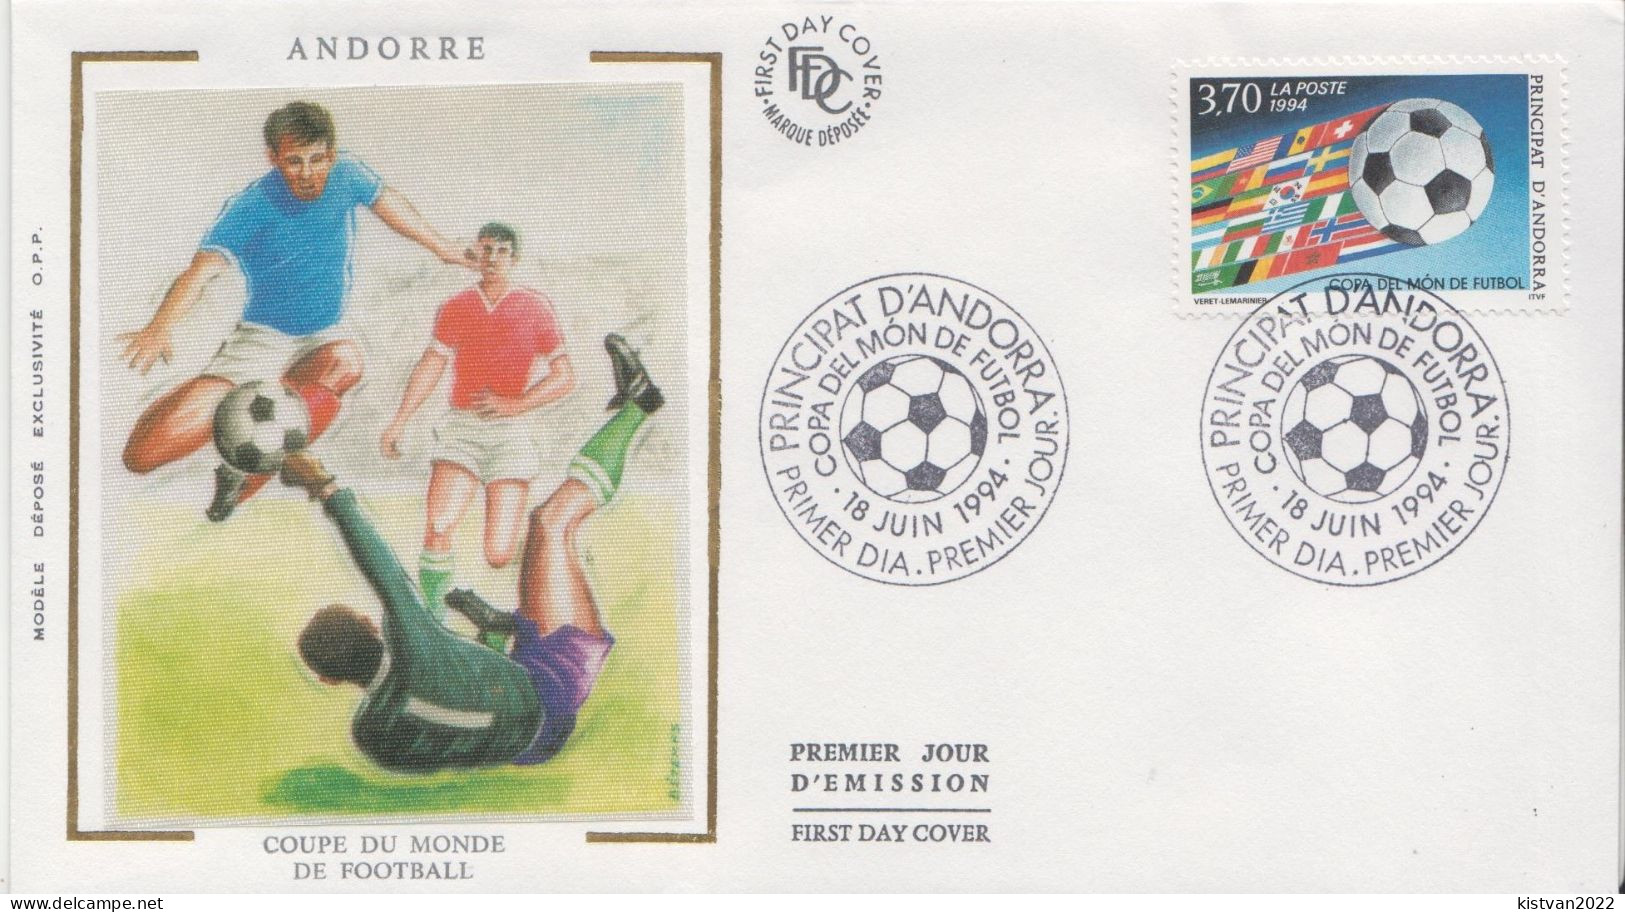 Andorra Stamp On Silk FDC - 1994 – Estados Unidos